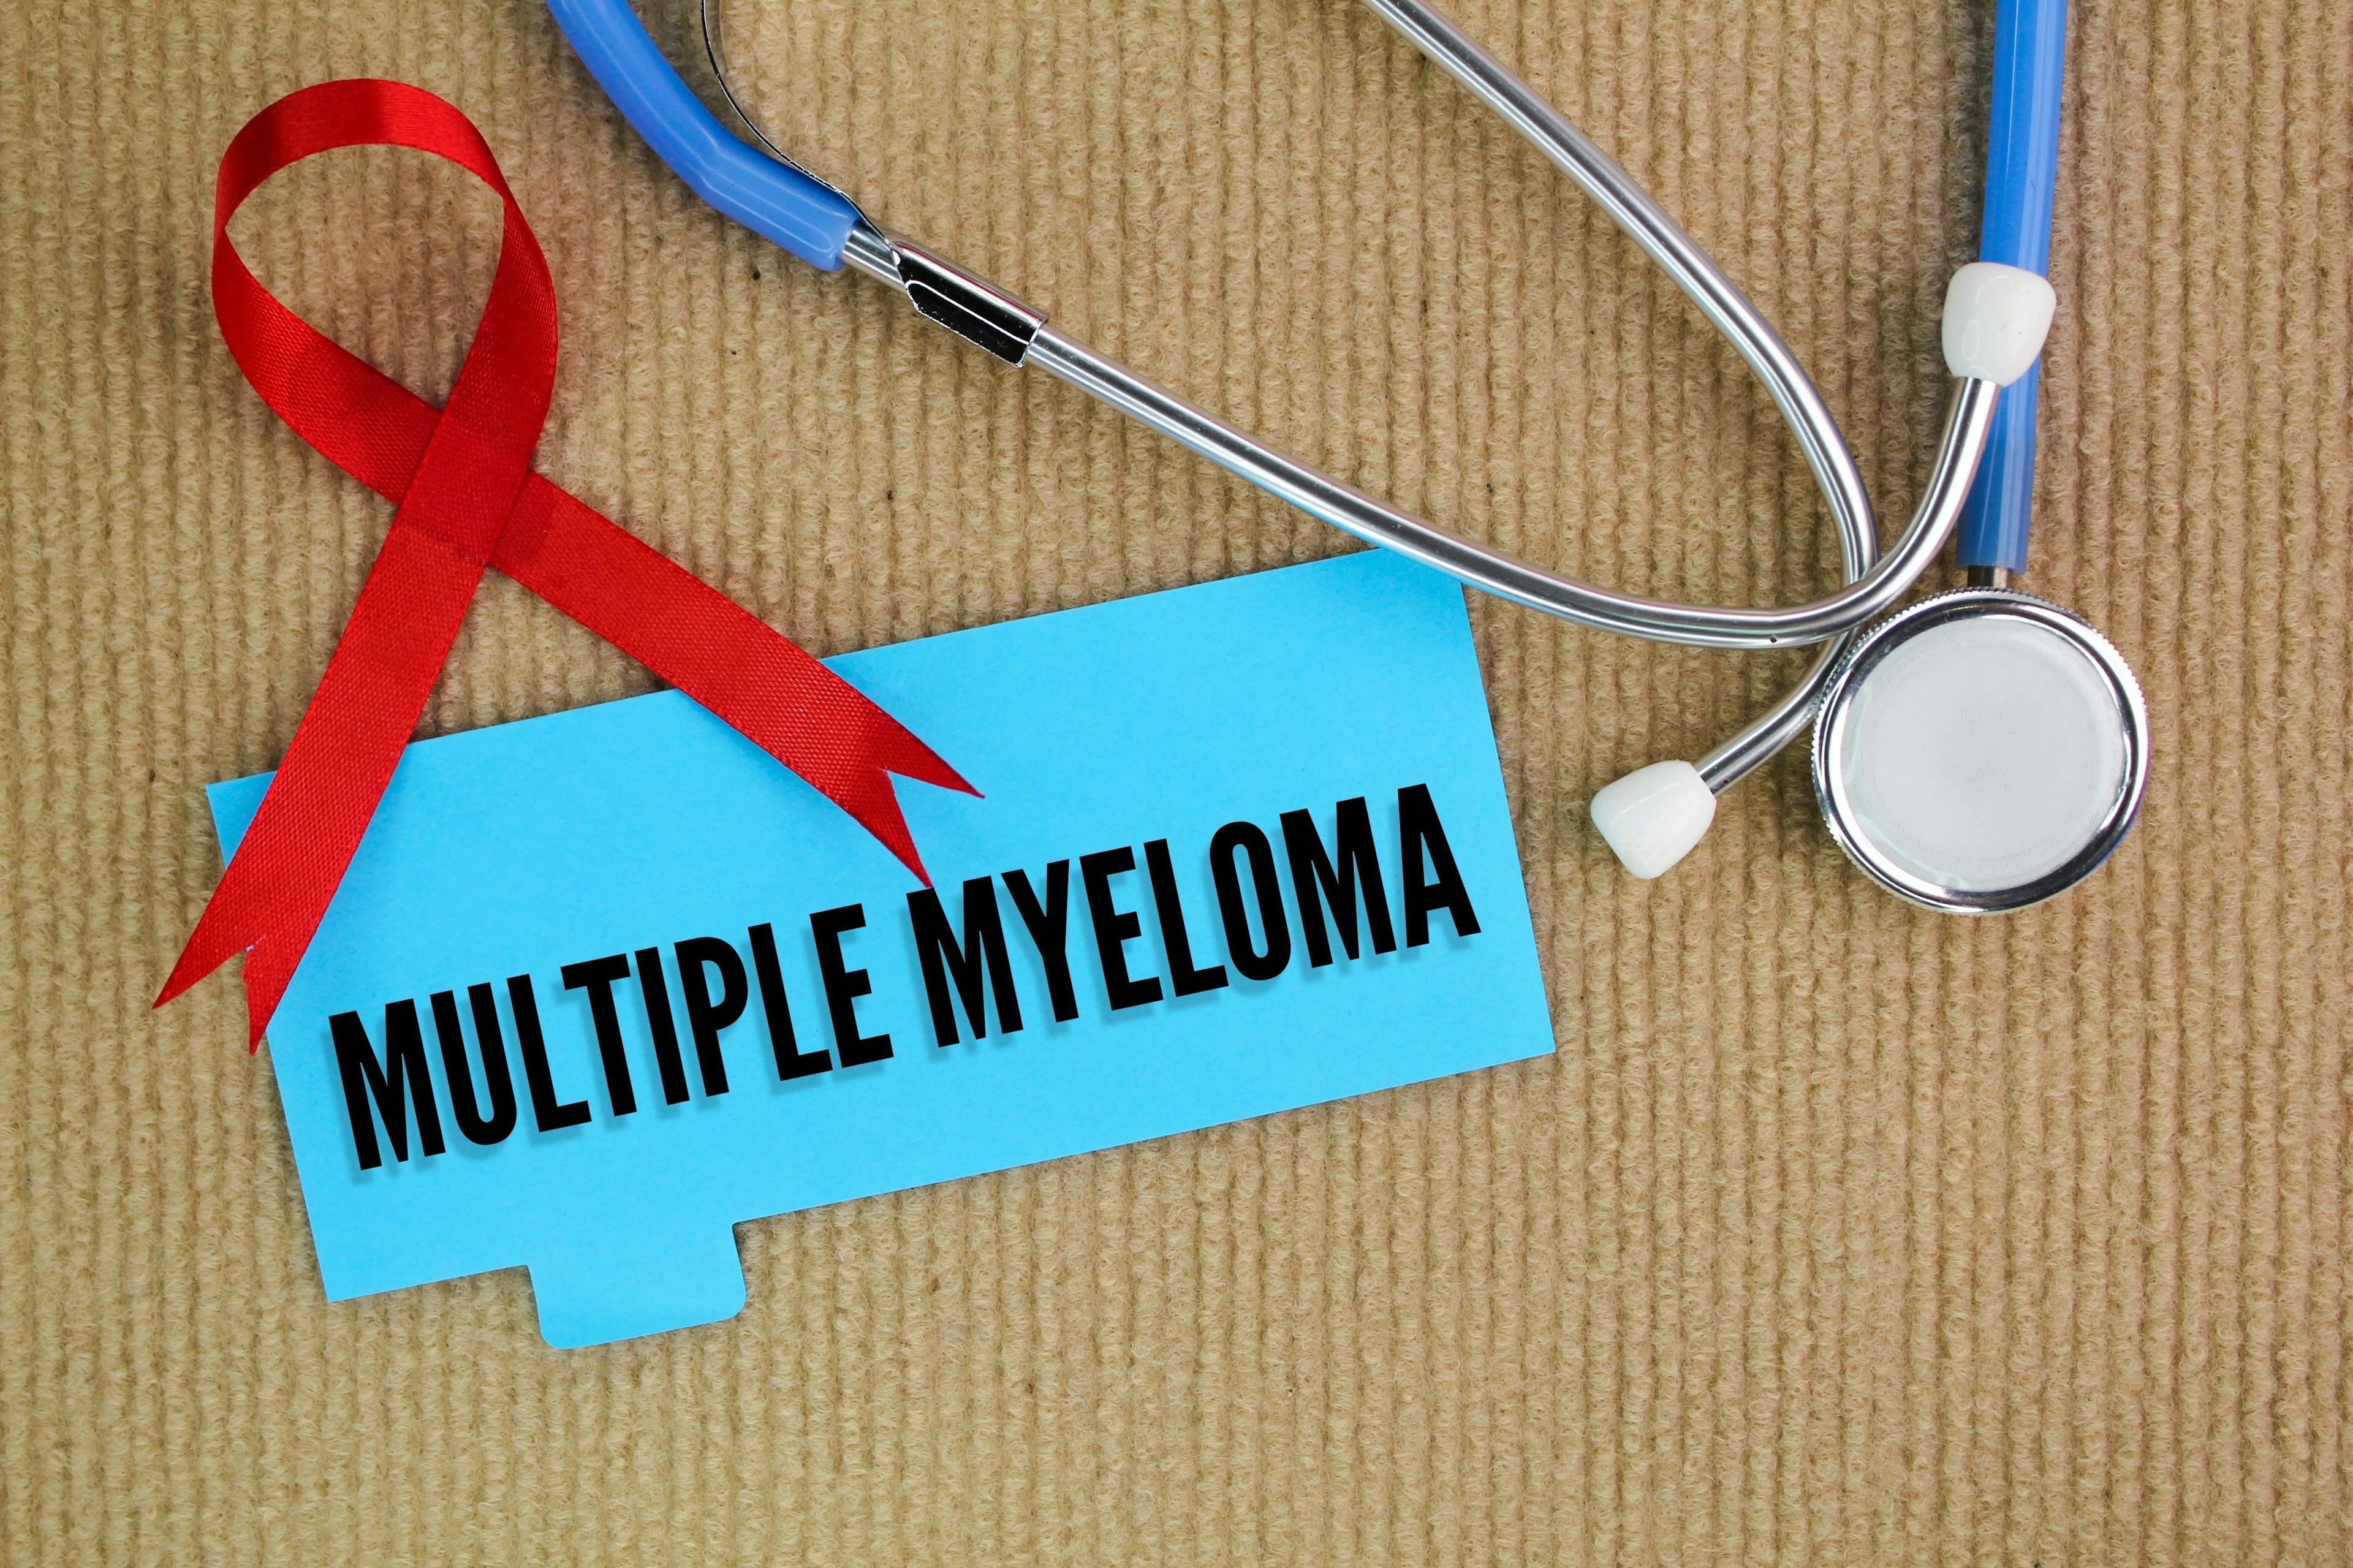 Multiple myeloma, stethoscope, and maroon ribbon -- Image credit: Fauzi | stock.adobe.com